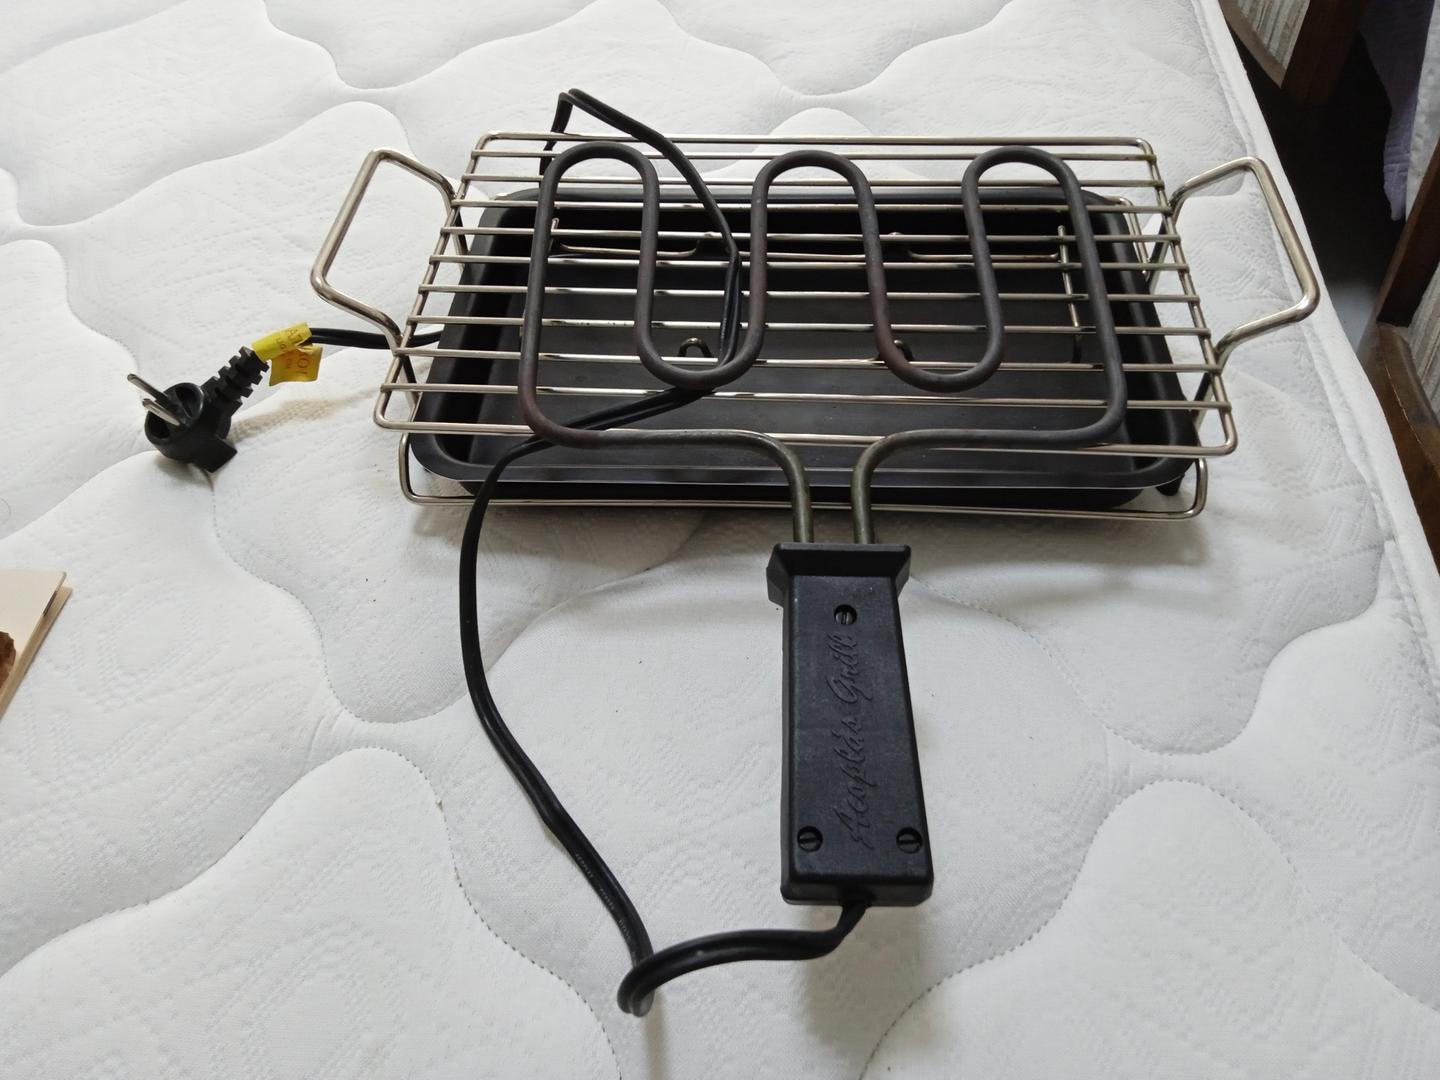 Churrasqueira elétrica Acoplás grill Light em Aço / Ferro Preto 23 cm x 38 cm x 12 cm